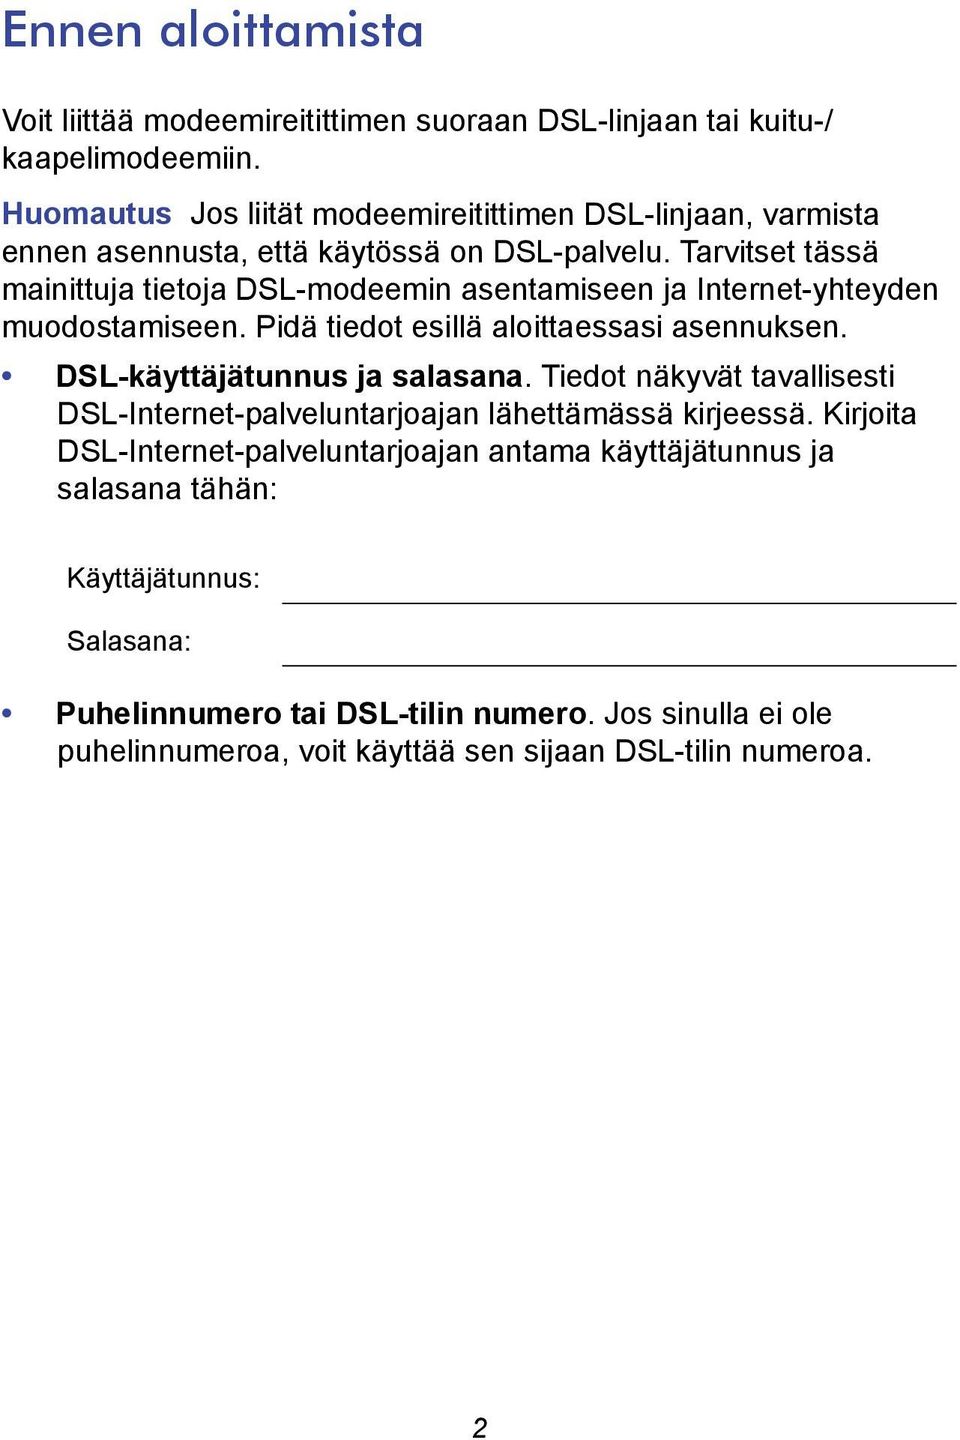 Tarvitset tässä mainittuja tietoja DSL-modeemin asentamiseen ja Internet-yhteyden muodostamiseen. Pidä tiedot esillä aloittaessasi asennuksen.